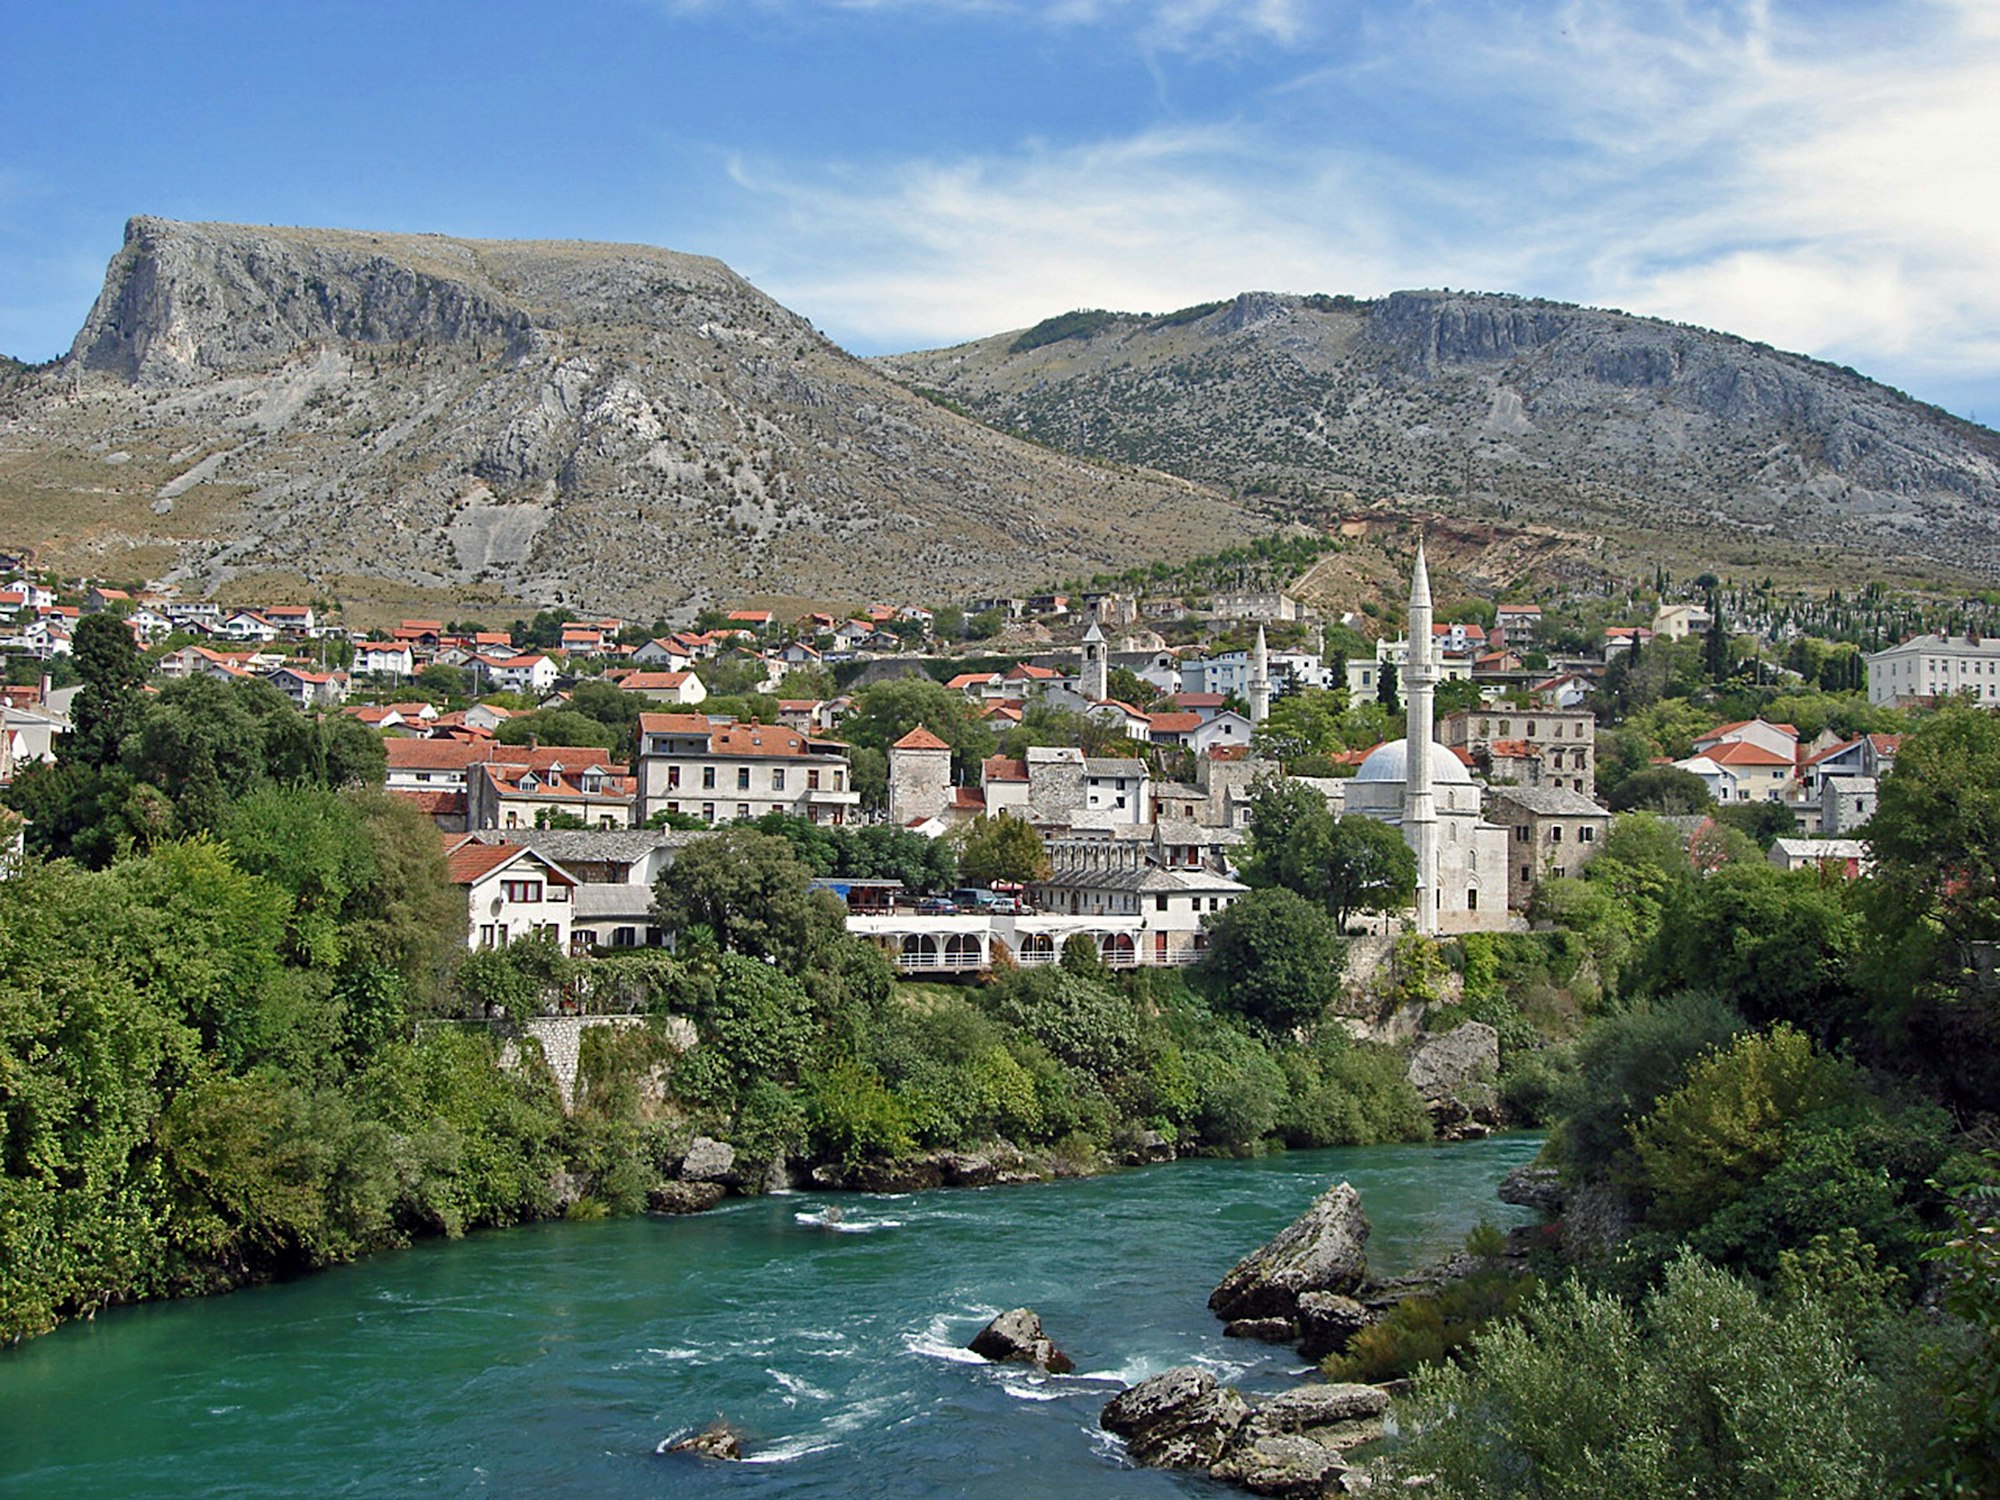 Das Foto zeigt einen schmalen Fluss, der an einem kleinen Ort in Bosnien-Herzegowina vorbeifließt. Im Hintergrund sind Berge zu sehen.